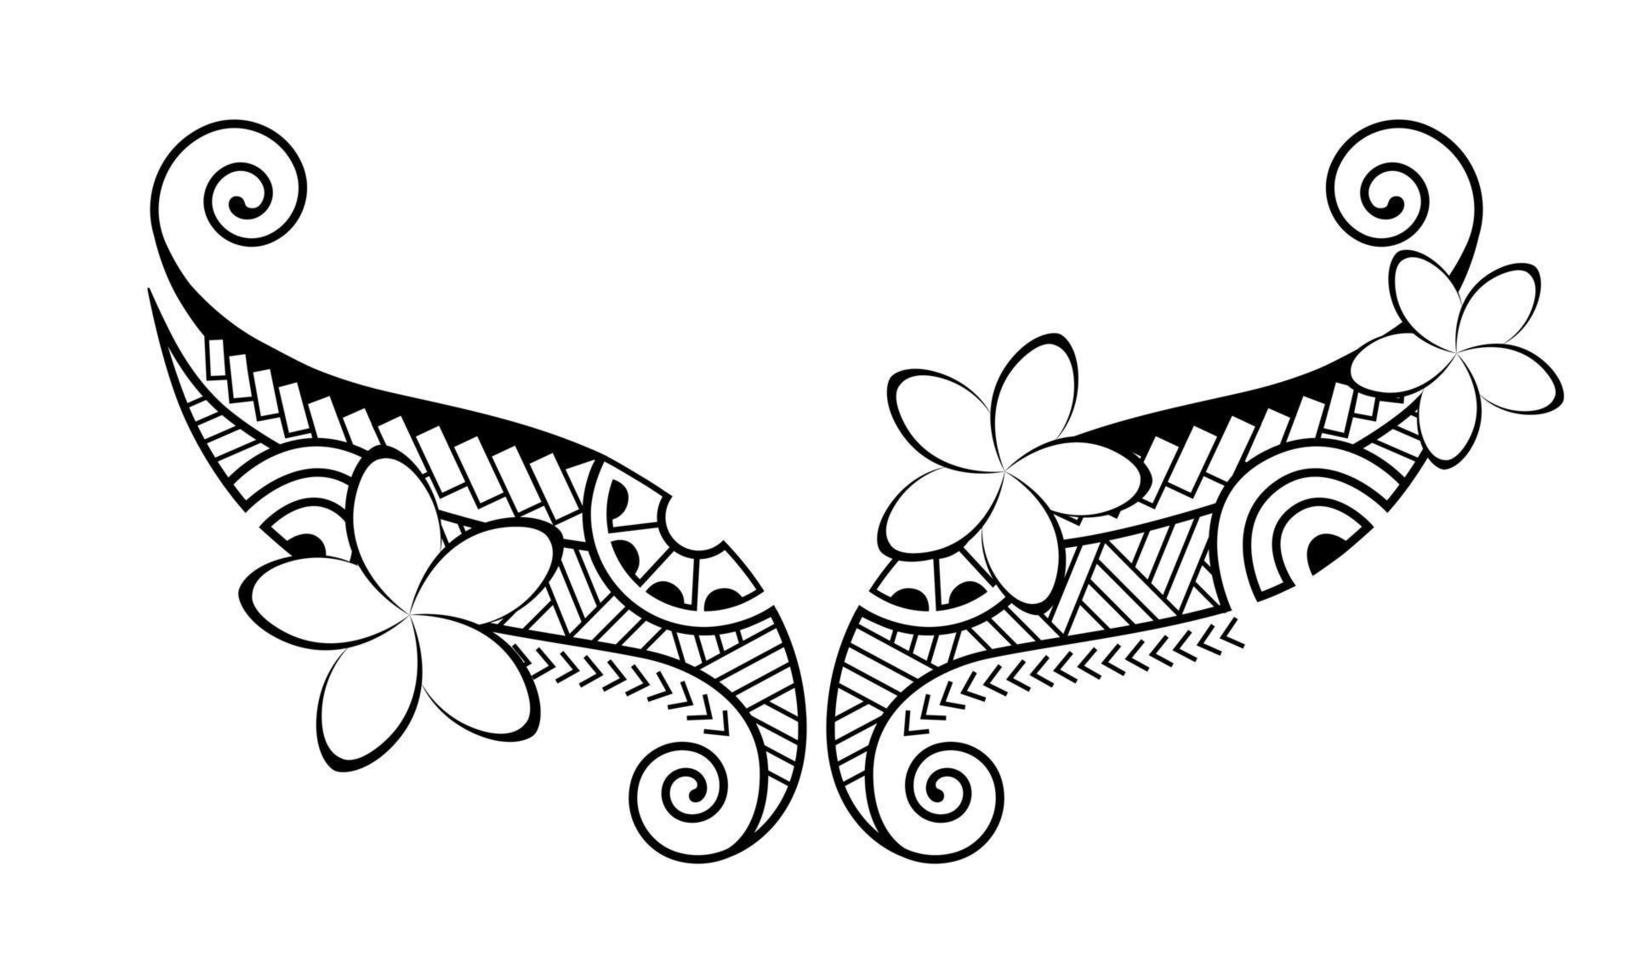 tatuaggio in stile maori. ornamento orientale decorativo etnico con fiori di frangipani plumeria. vettore